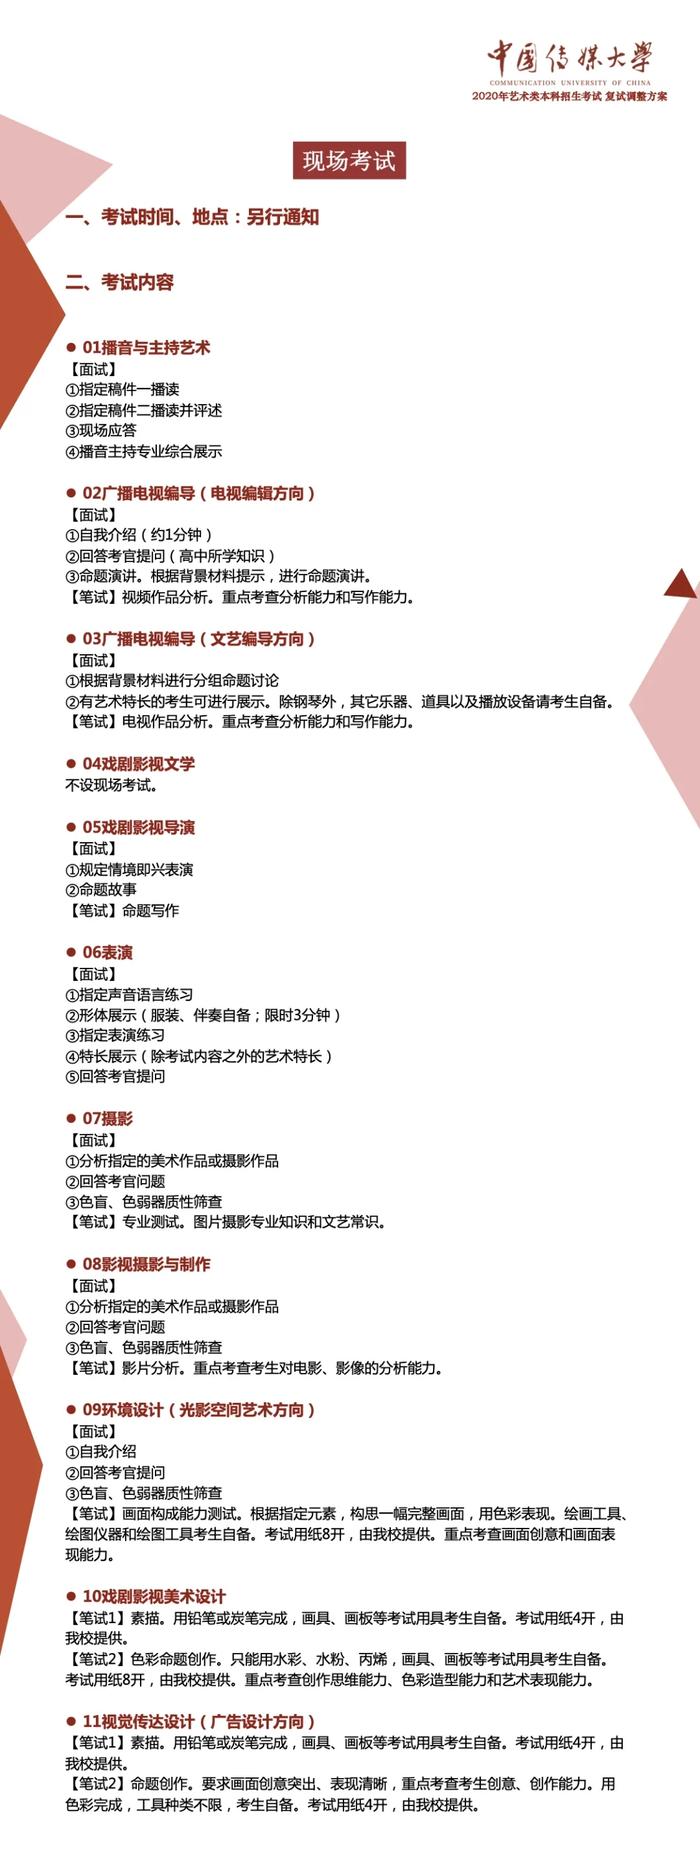 中国传媒大学：调整2020年艺术类专业考试复试方案